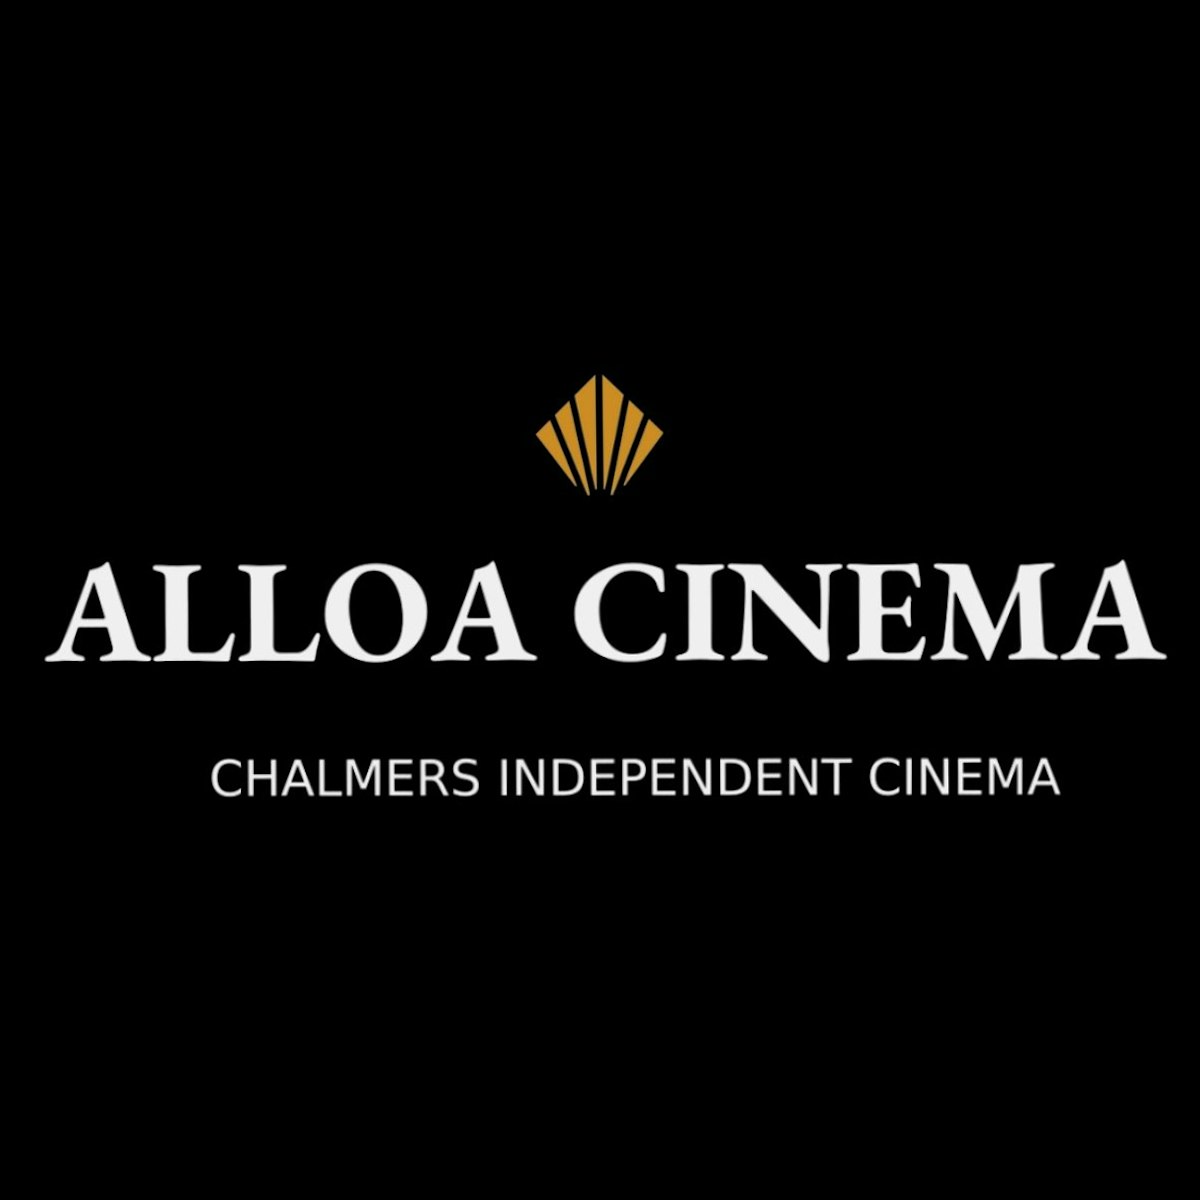 Alloa Cinema